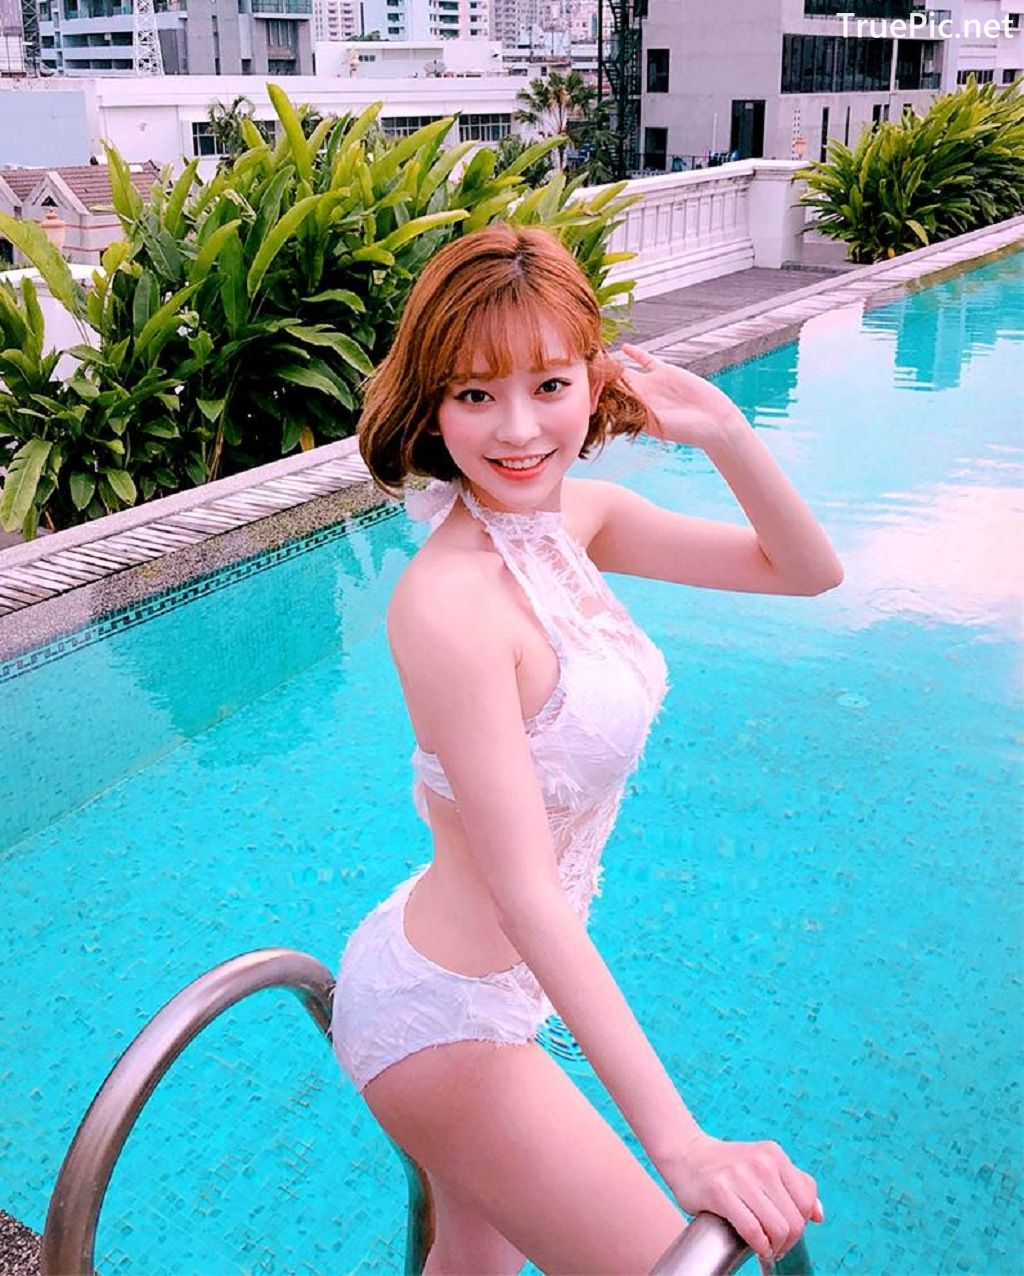 Image-Korean-Fashion-Model-Kang-Tae-Ri-Album-Summer-In-Bangkok-TruePic.net- Picture-32